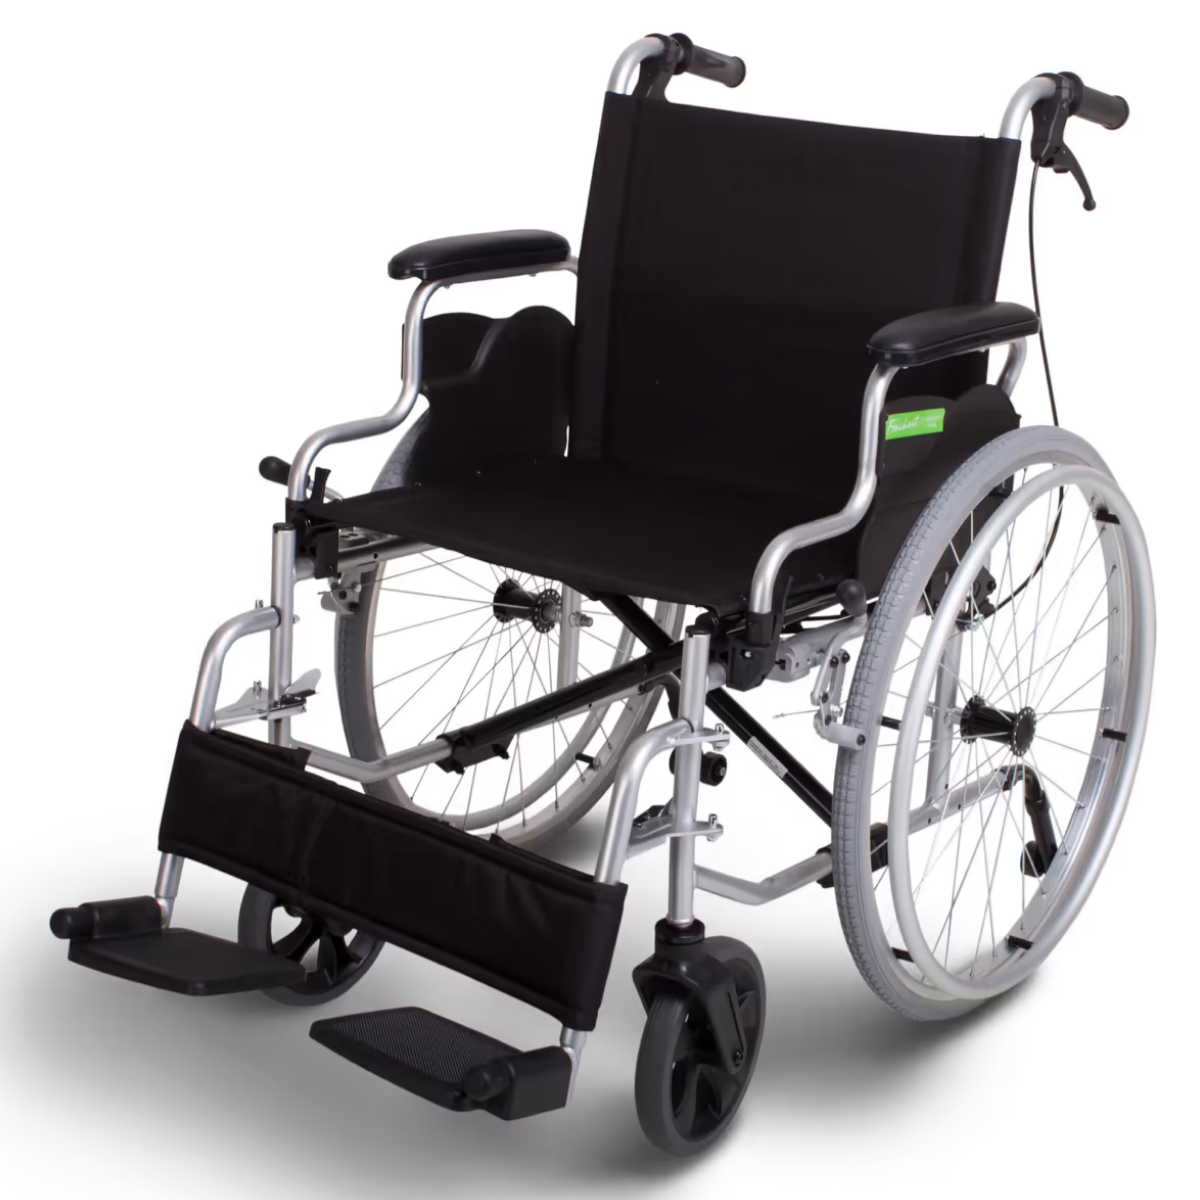 Freiheit Freedom lightweight manual wheelchair